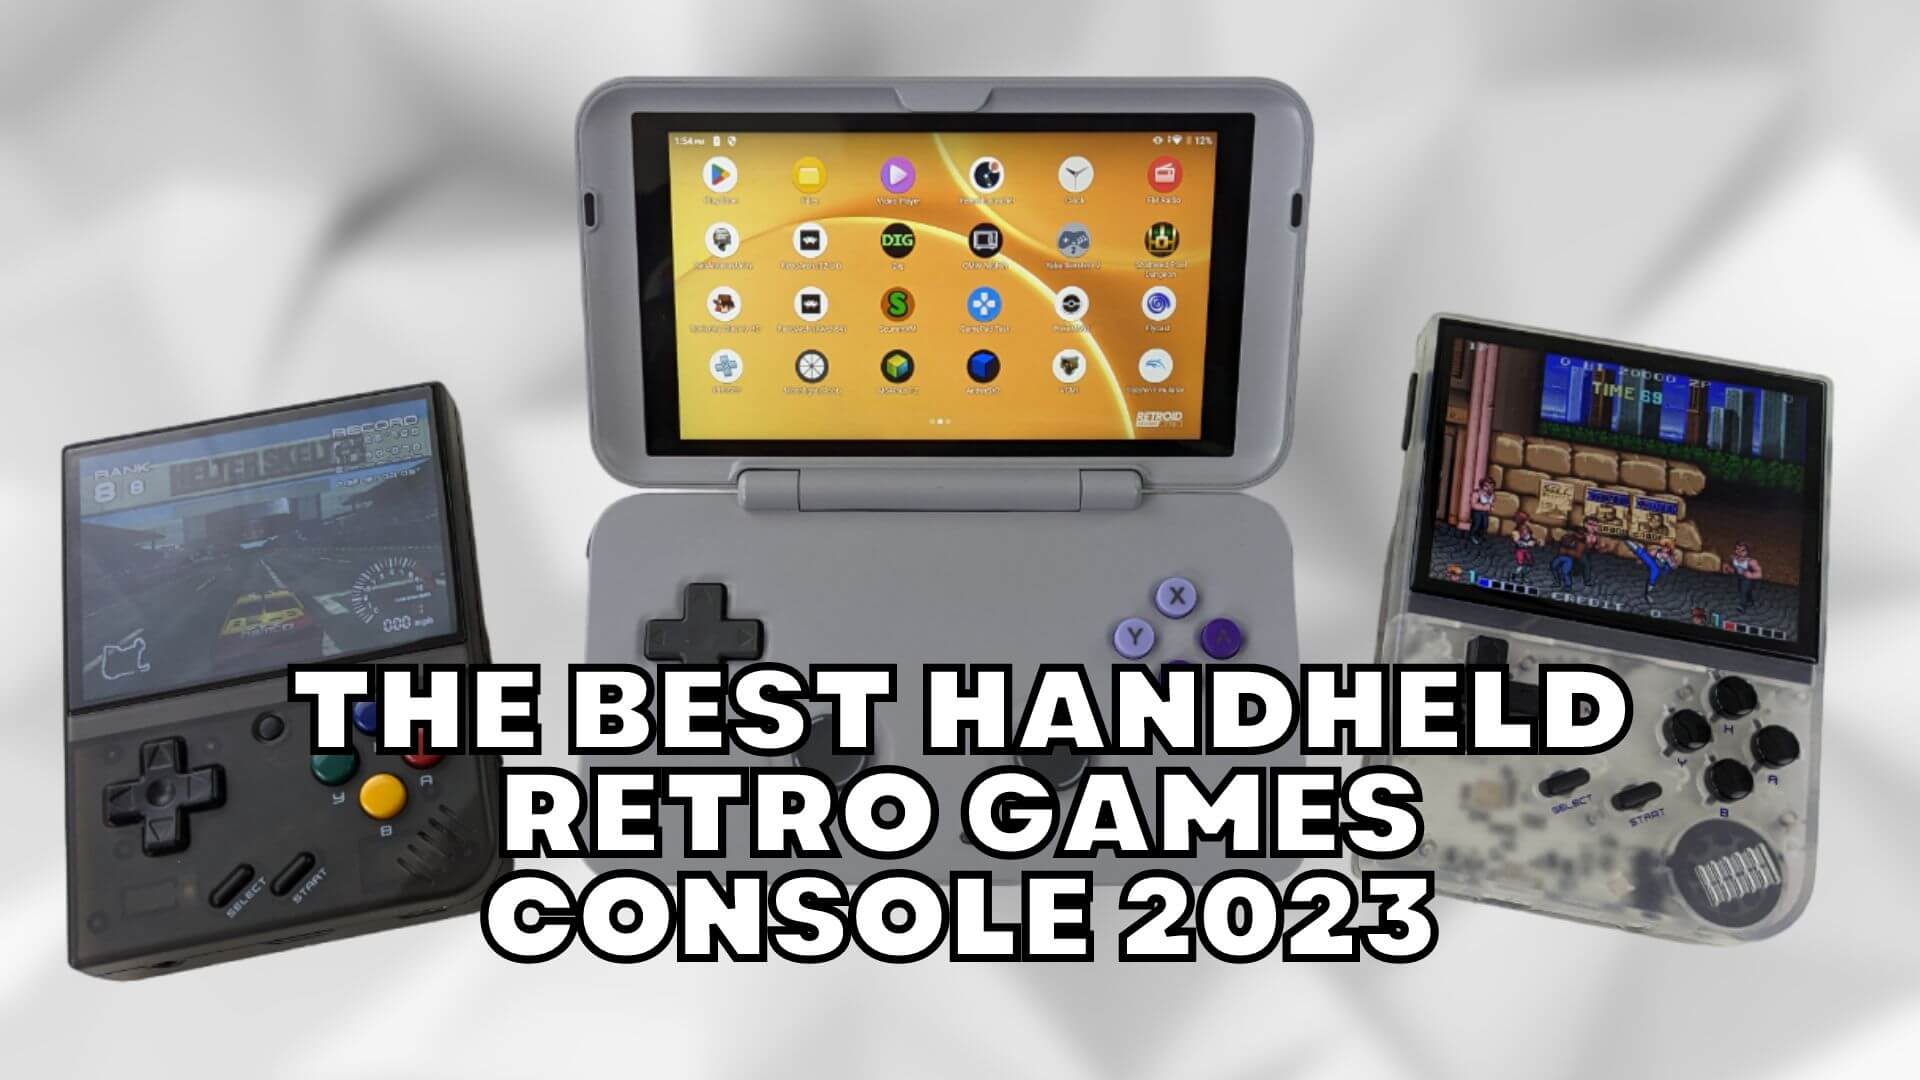 Les meilleures consoles de jeux rétro portables en 2023 - DroiX Blogs